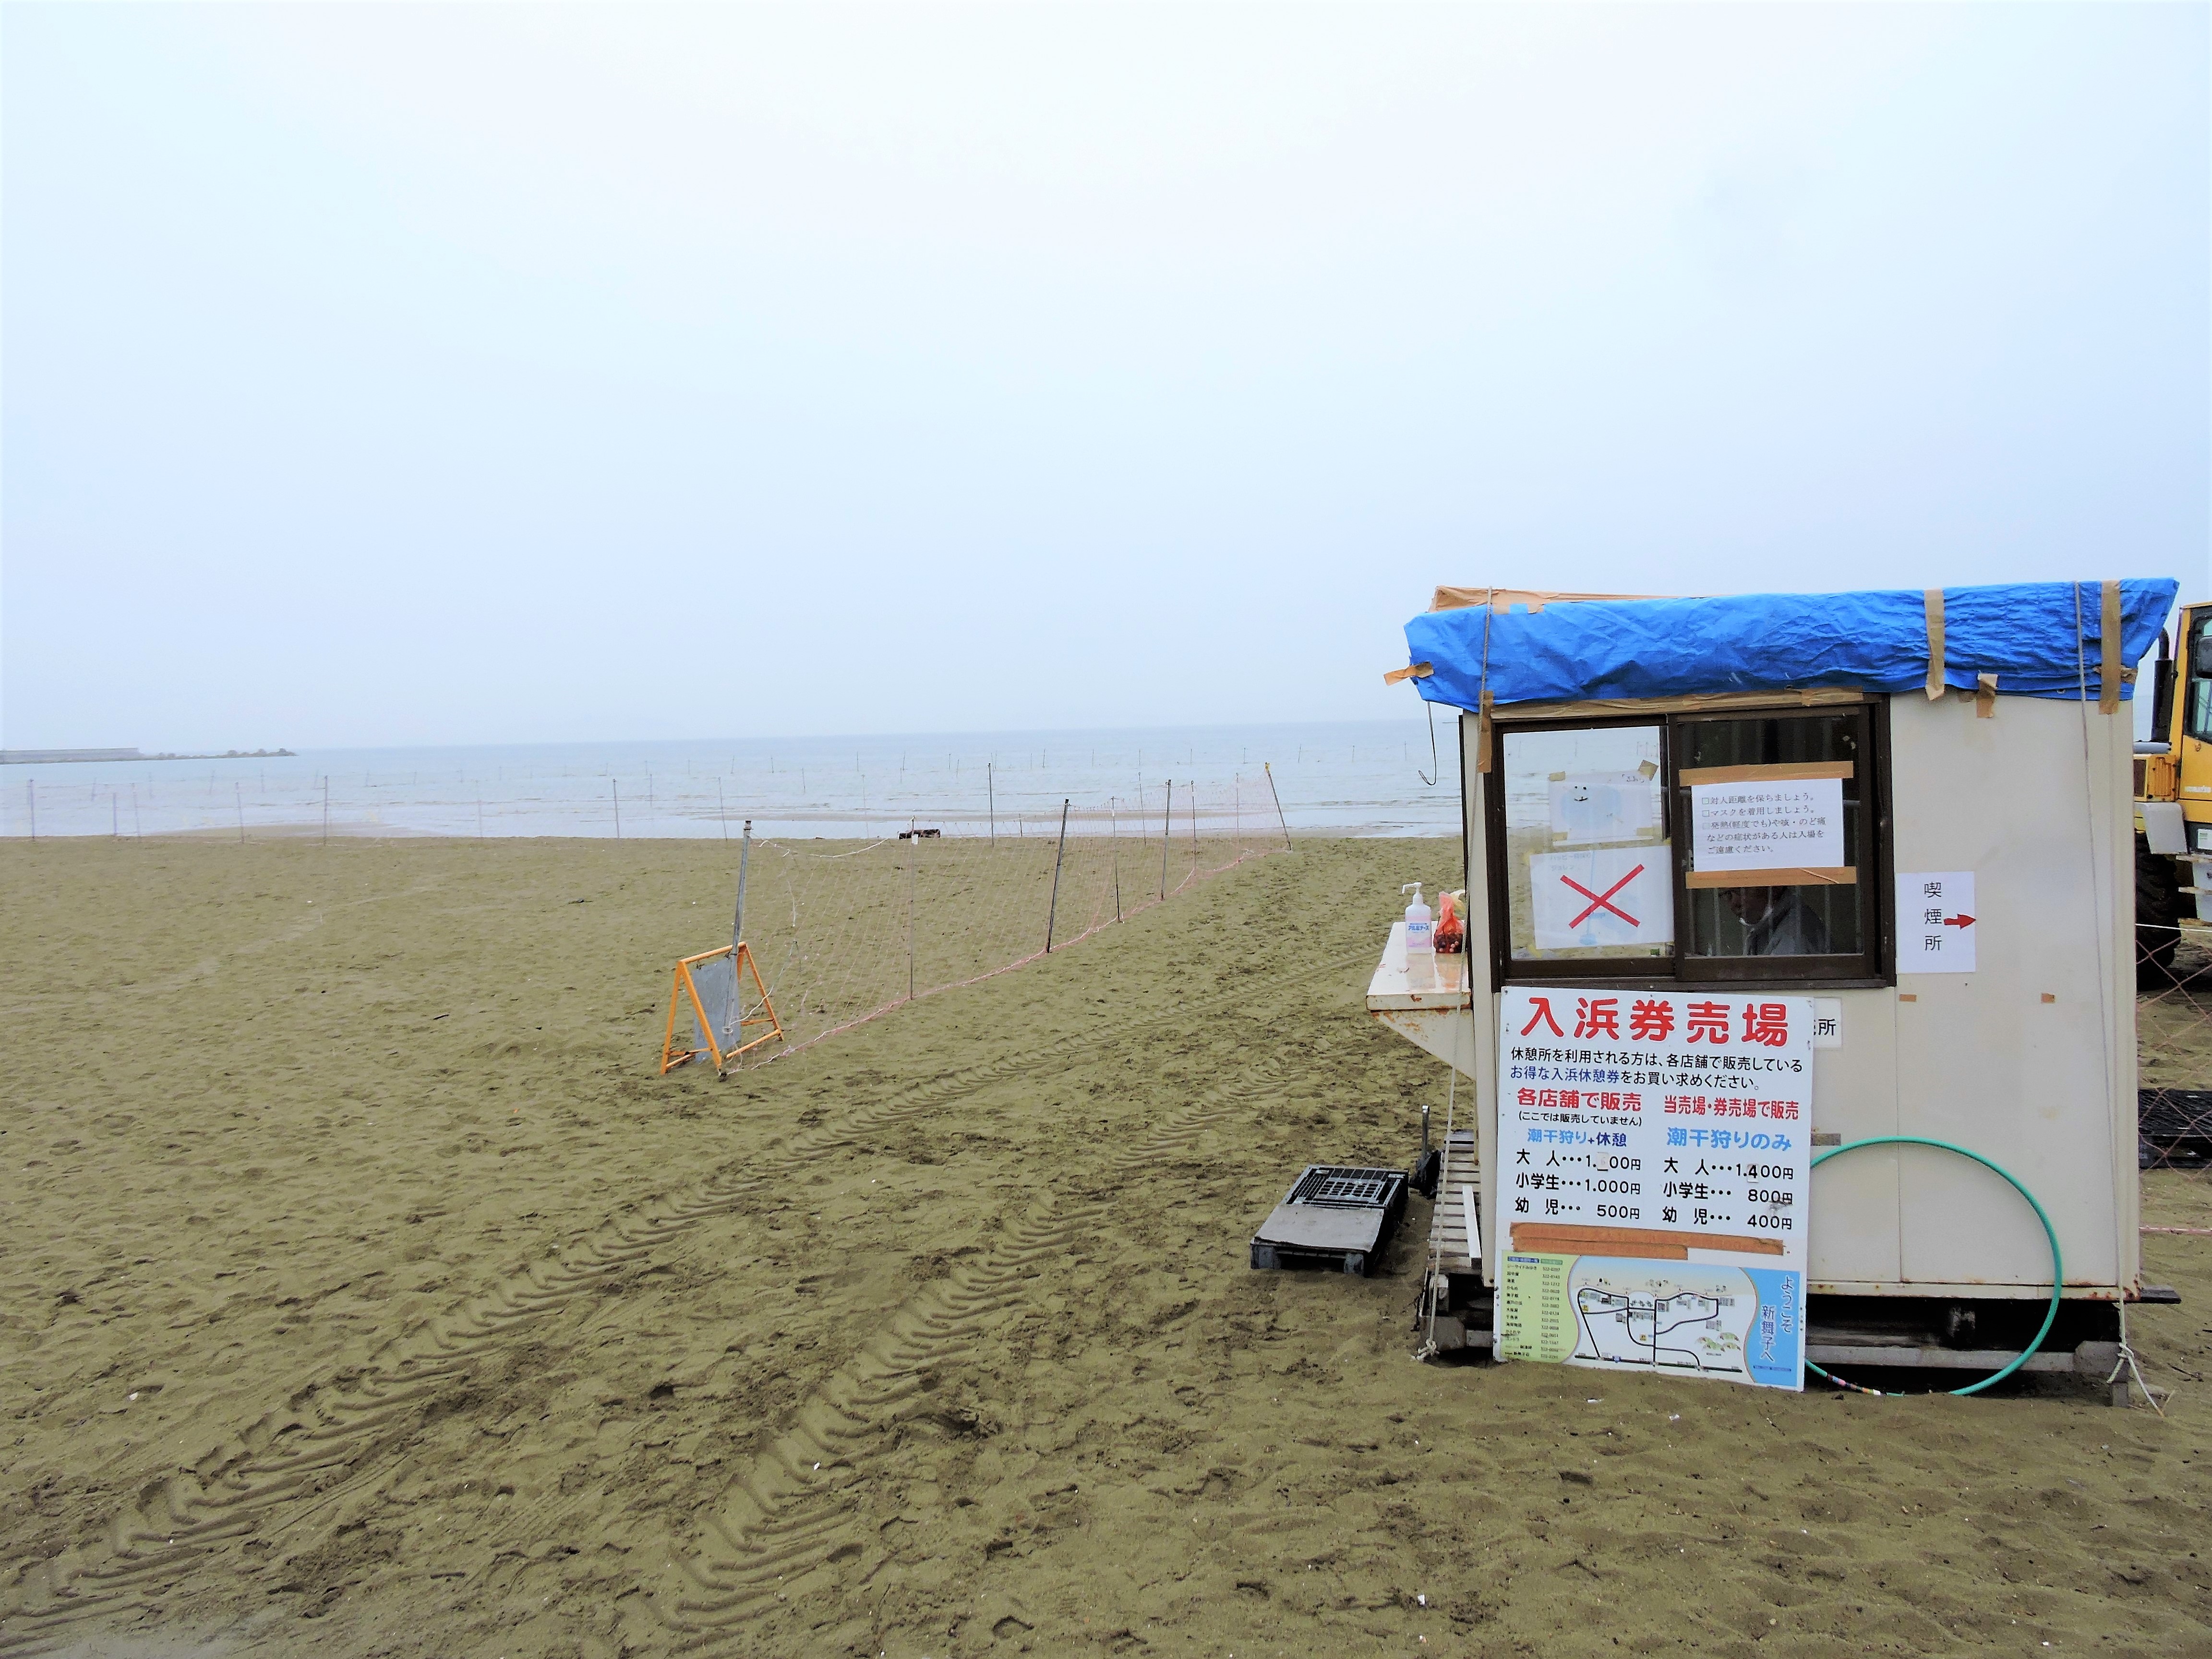 近畿随一の遠浅の海岸 瀬戸内海国立公園新舞子で潮干狩り 口コミ 公式 兵庫県観光サイト Hyogo ナビ 知っておきたい観光情報が盛りだくさん